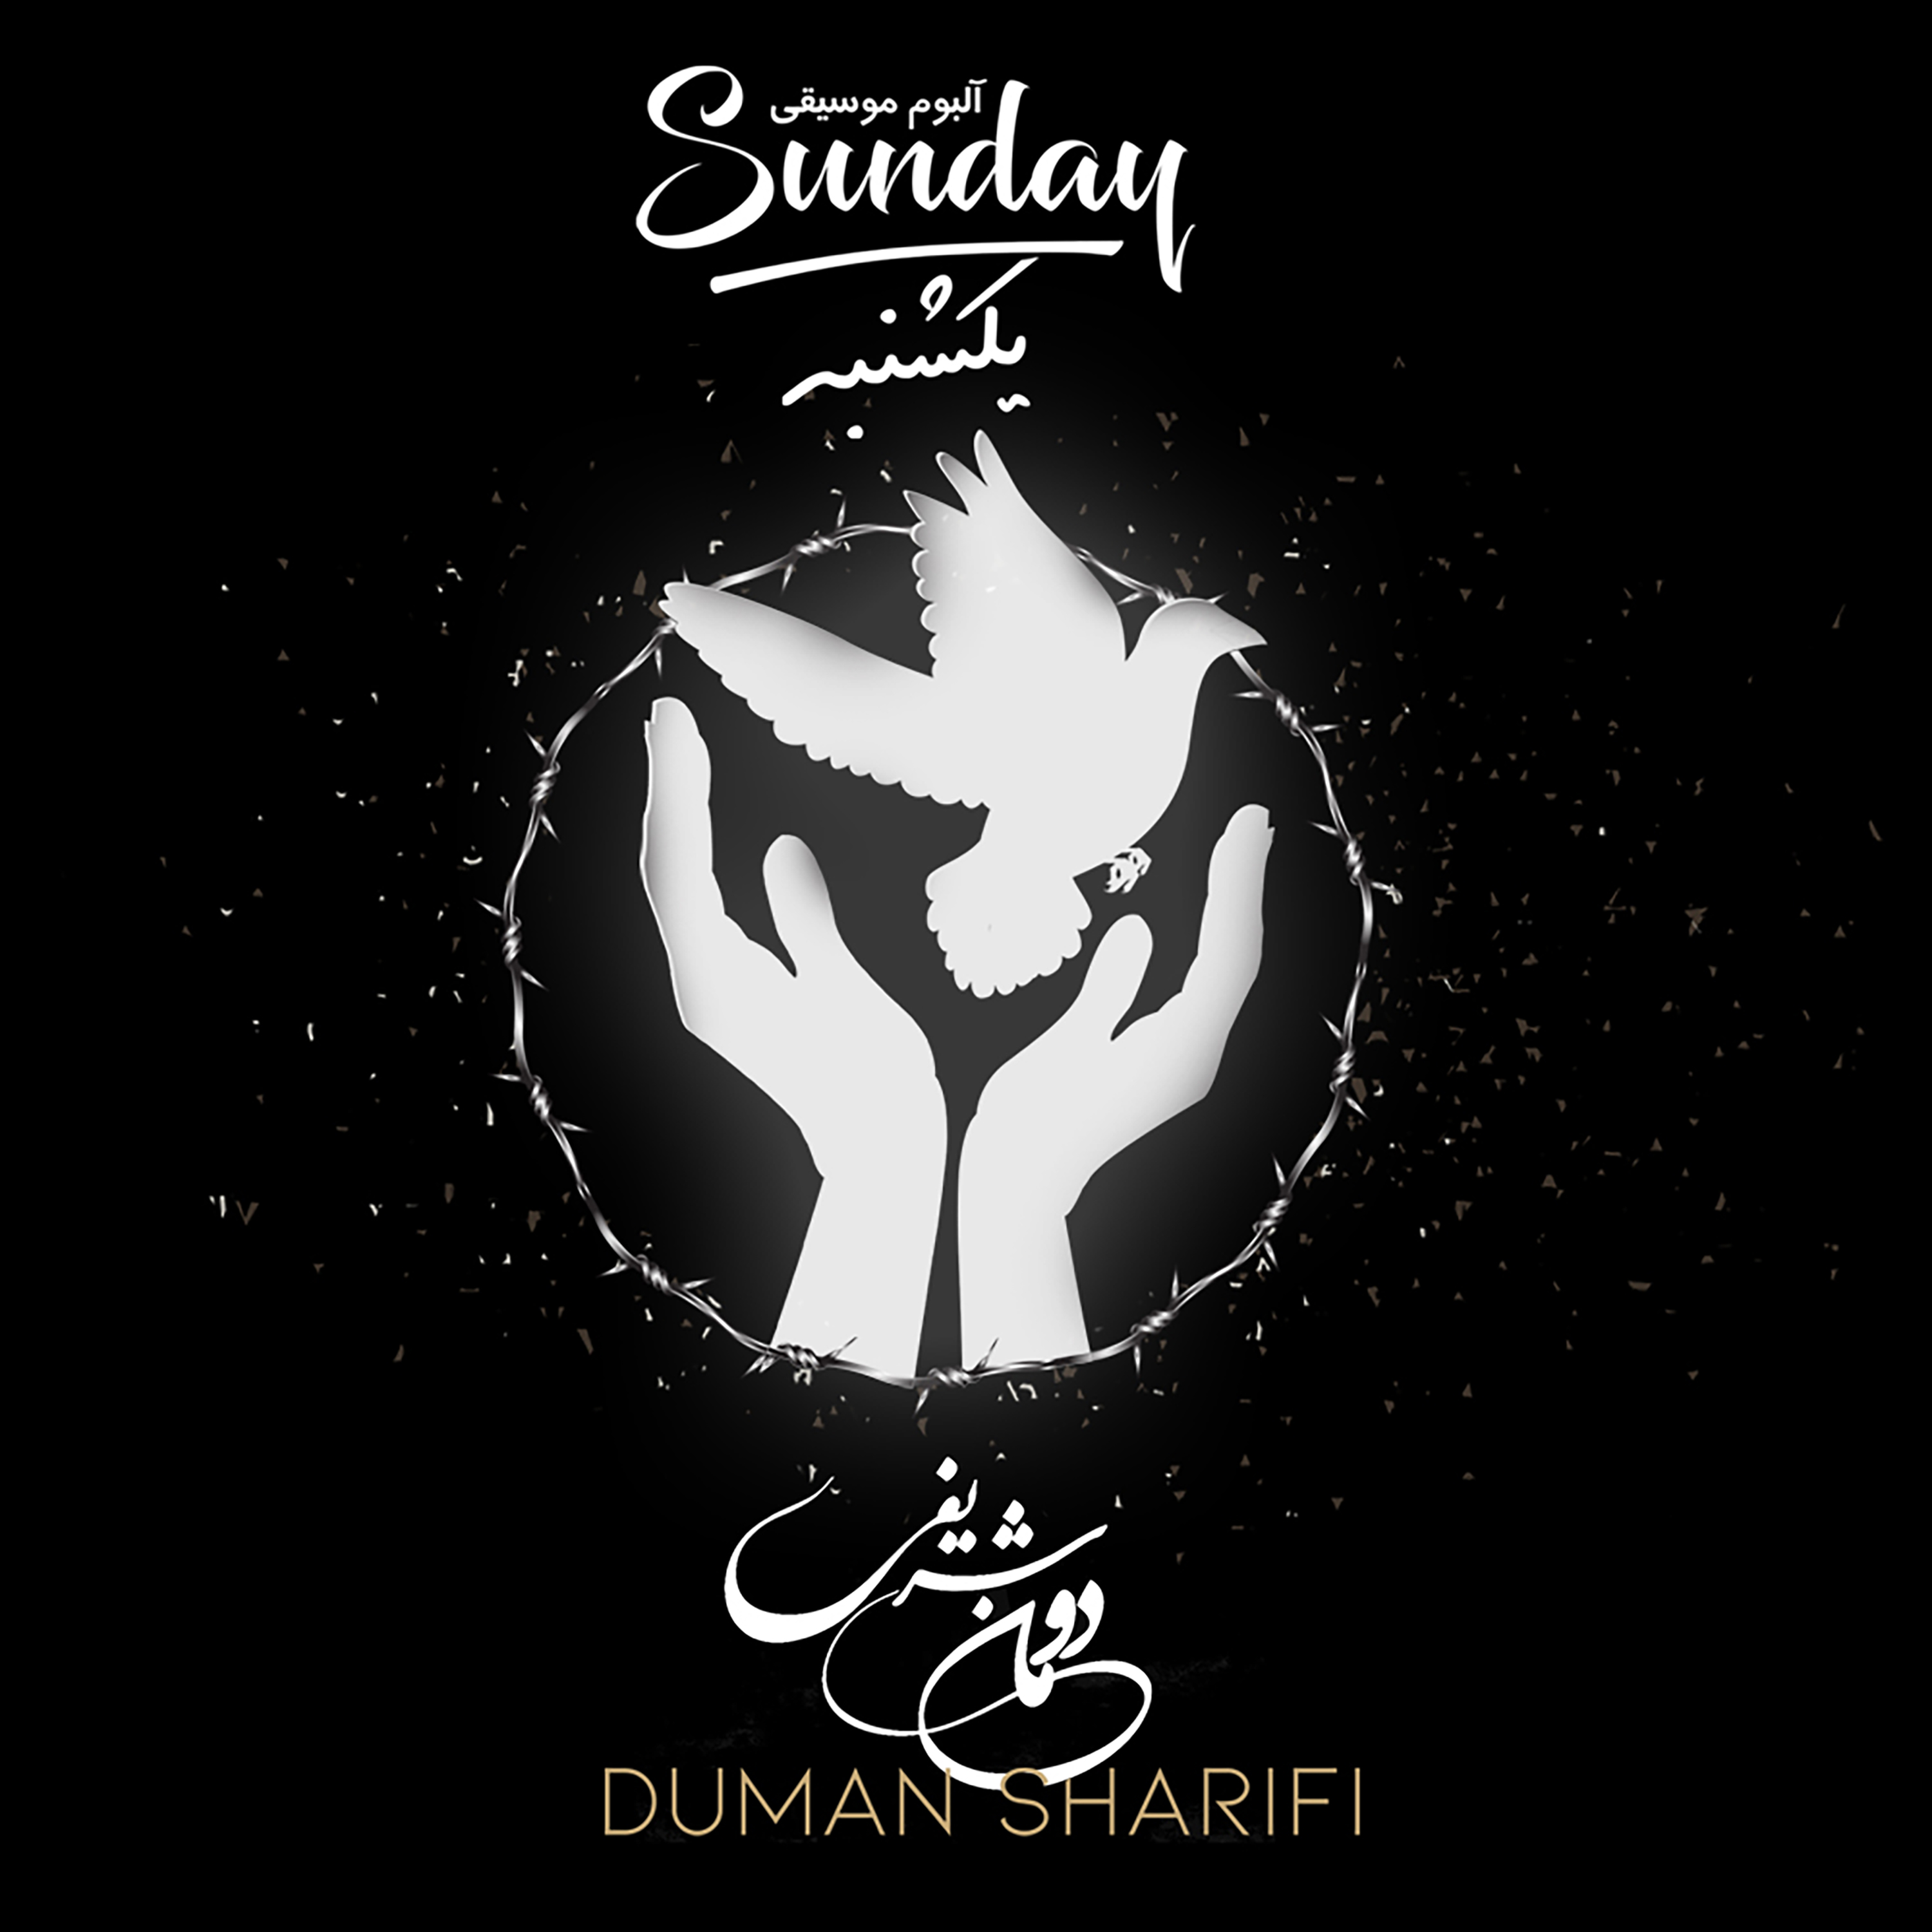  دانلود آهنگ جدید دومان شریفی - دنیای من | Download New Music By Duman Sharifi - My World